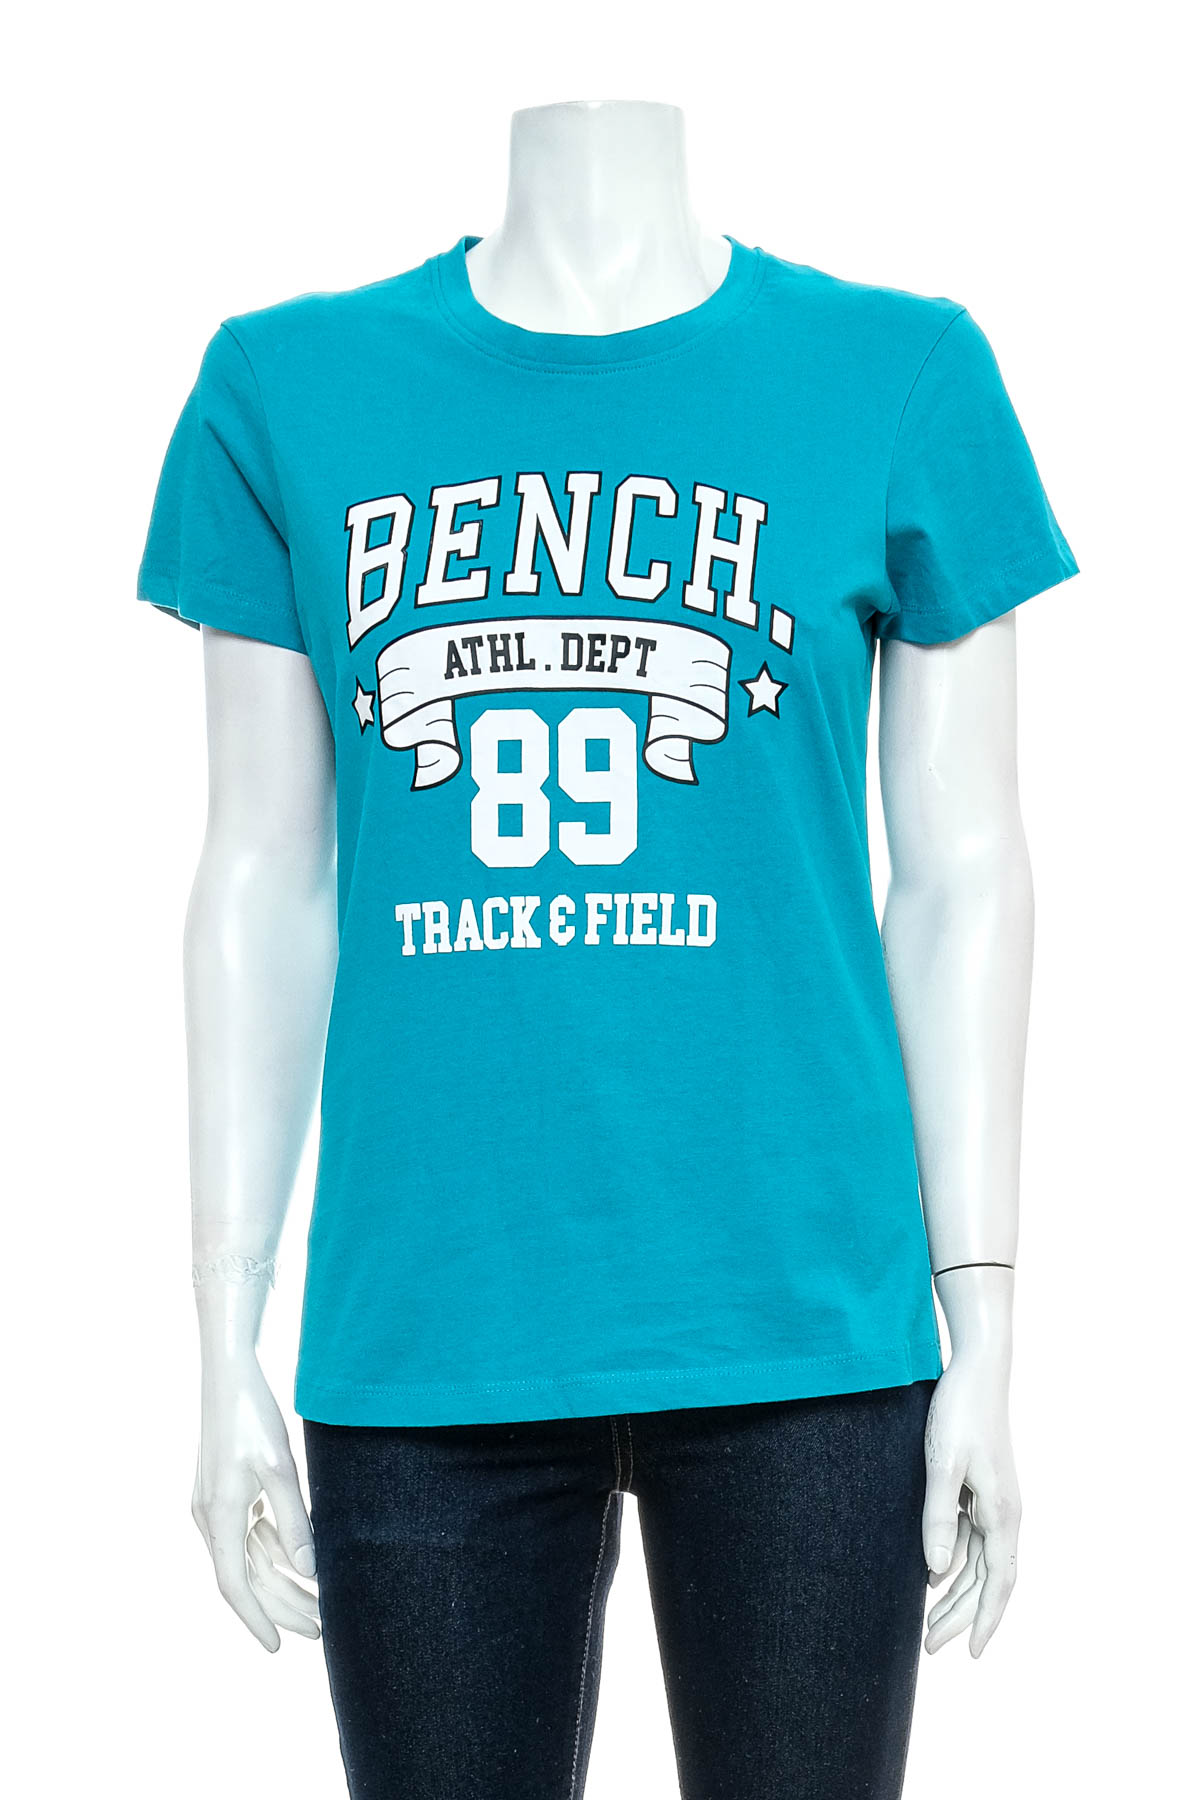 Women's t-shirt - Bench. - 0